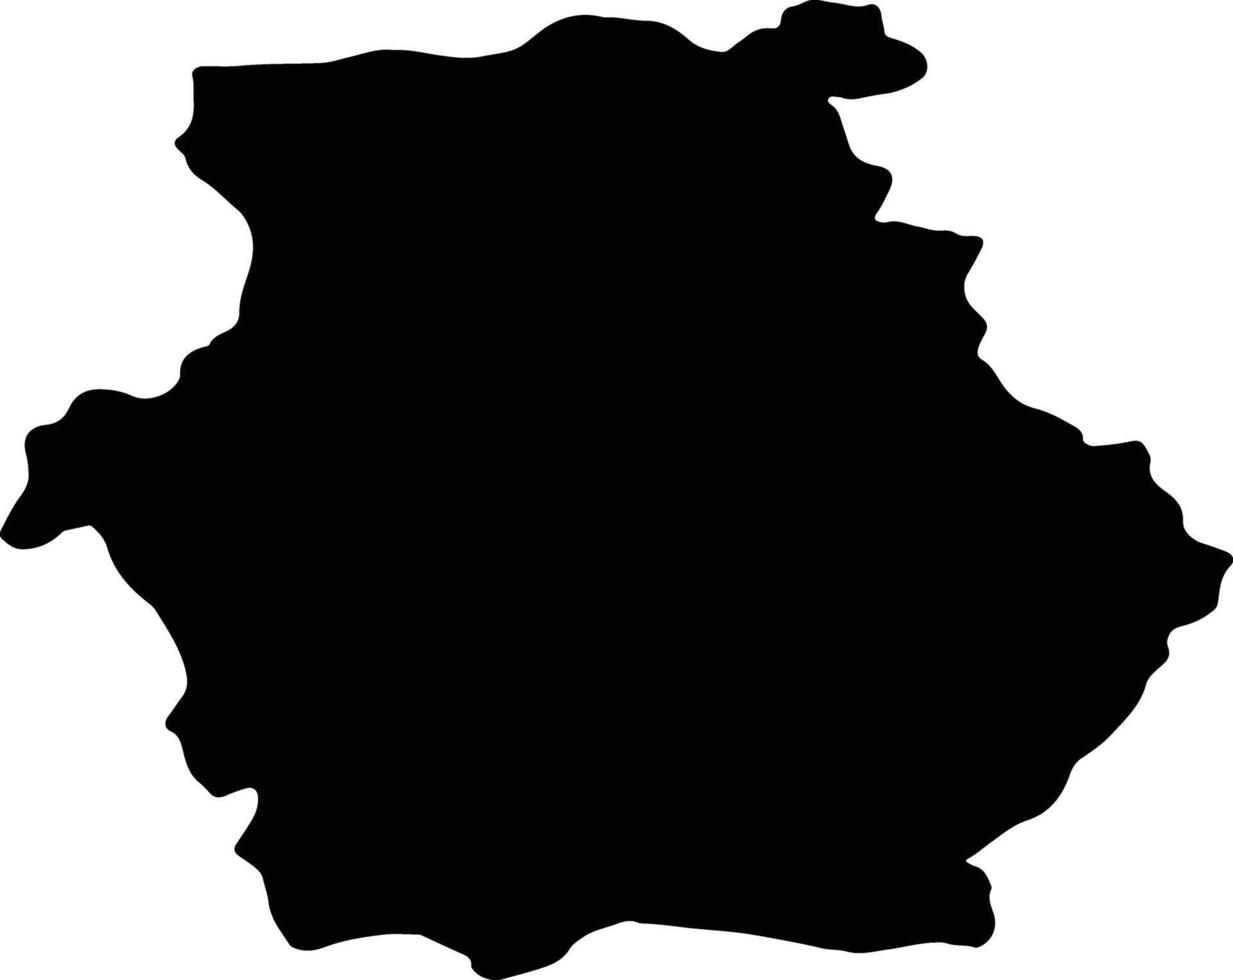 ditiki makedonia Grecia silhouette carta geografica vettore